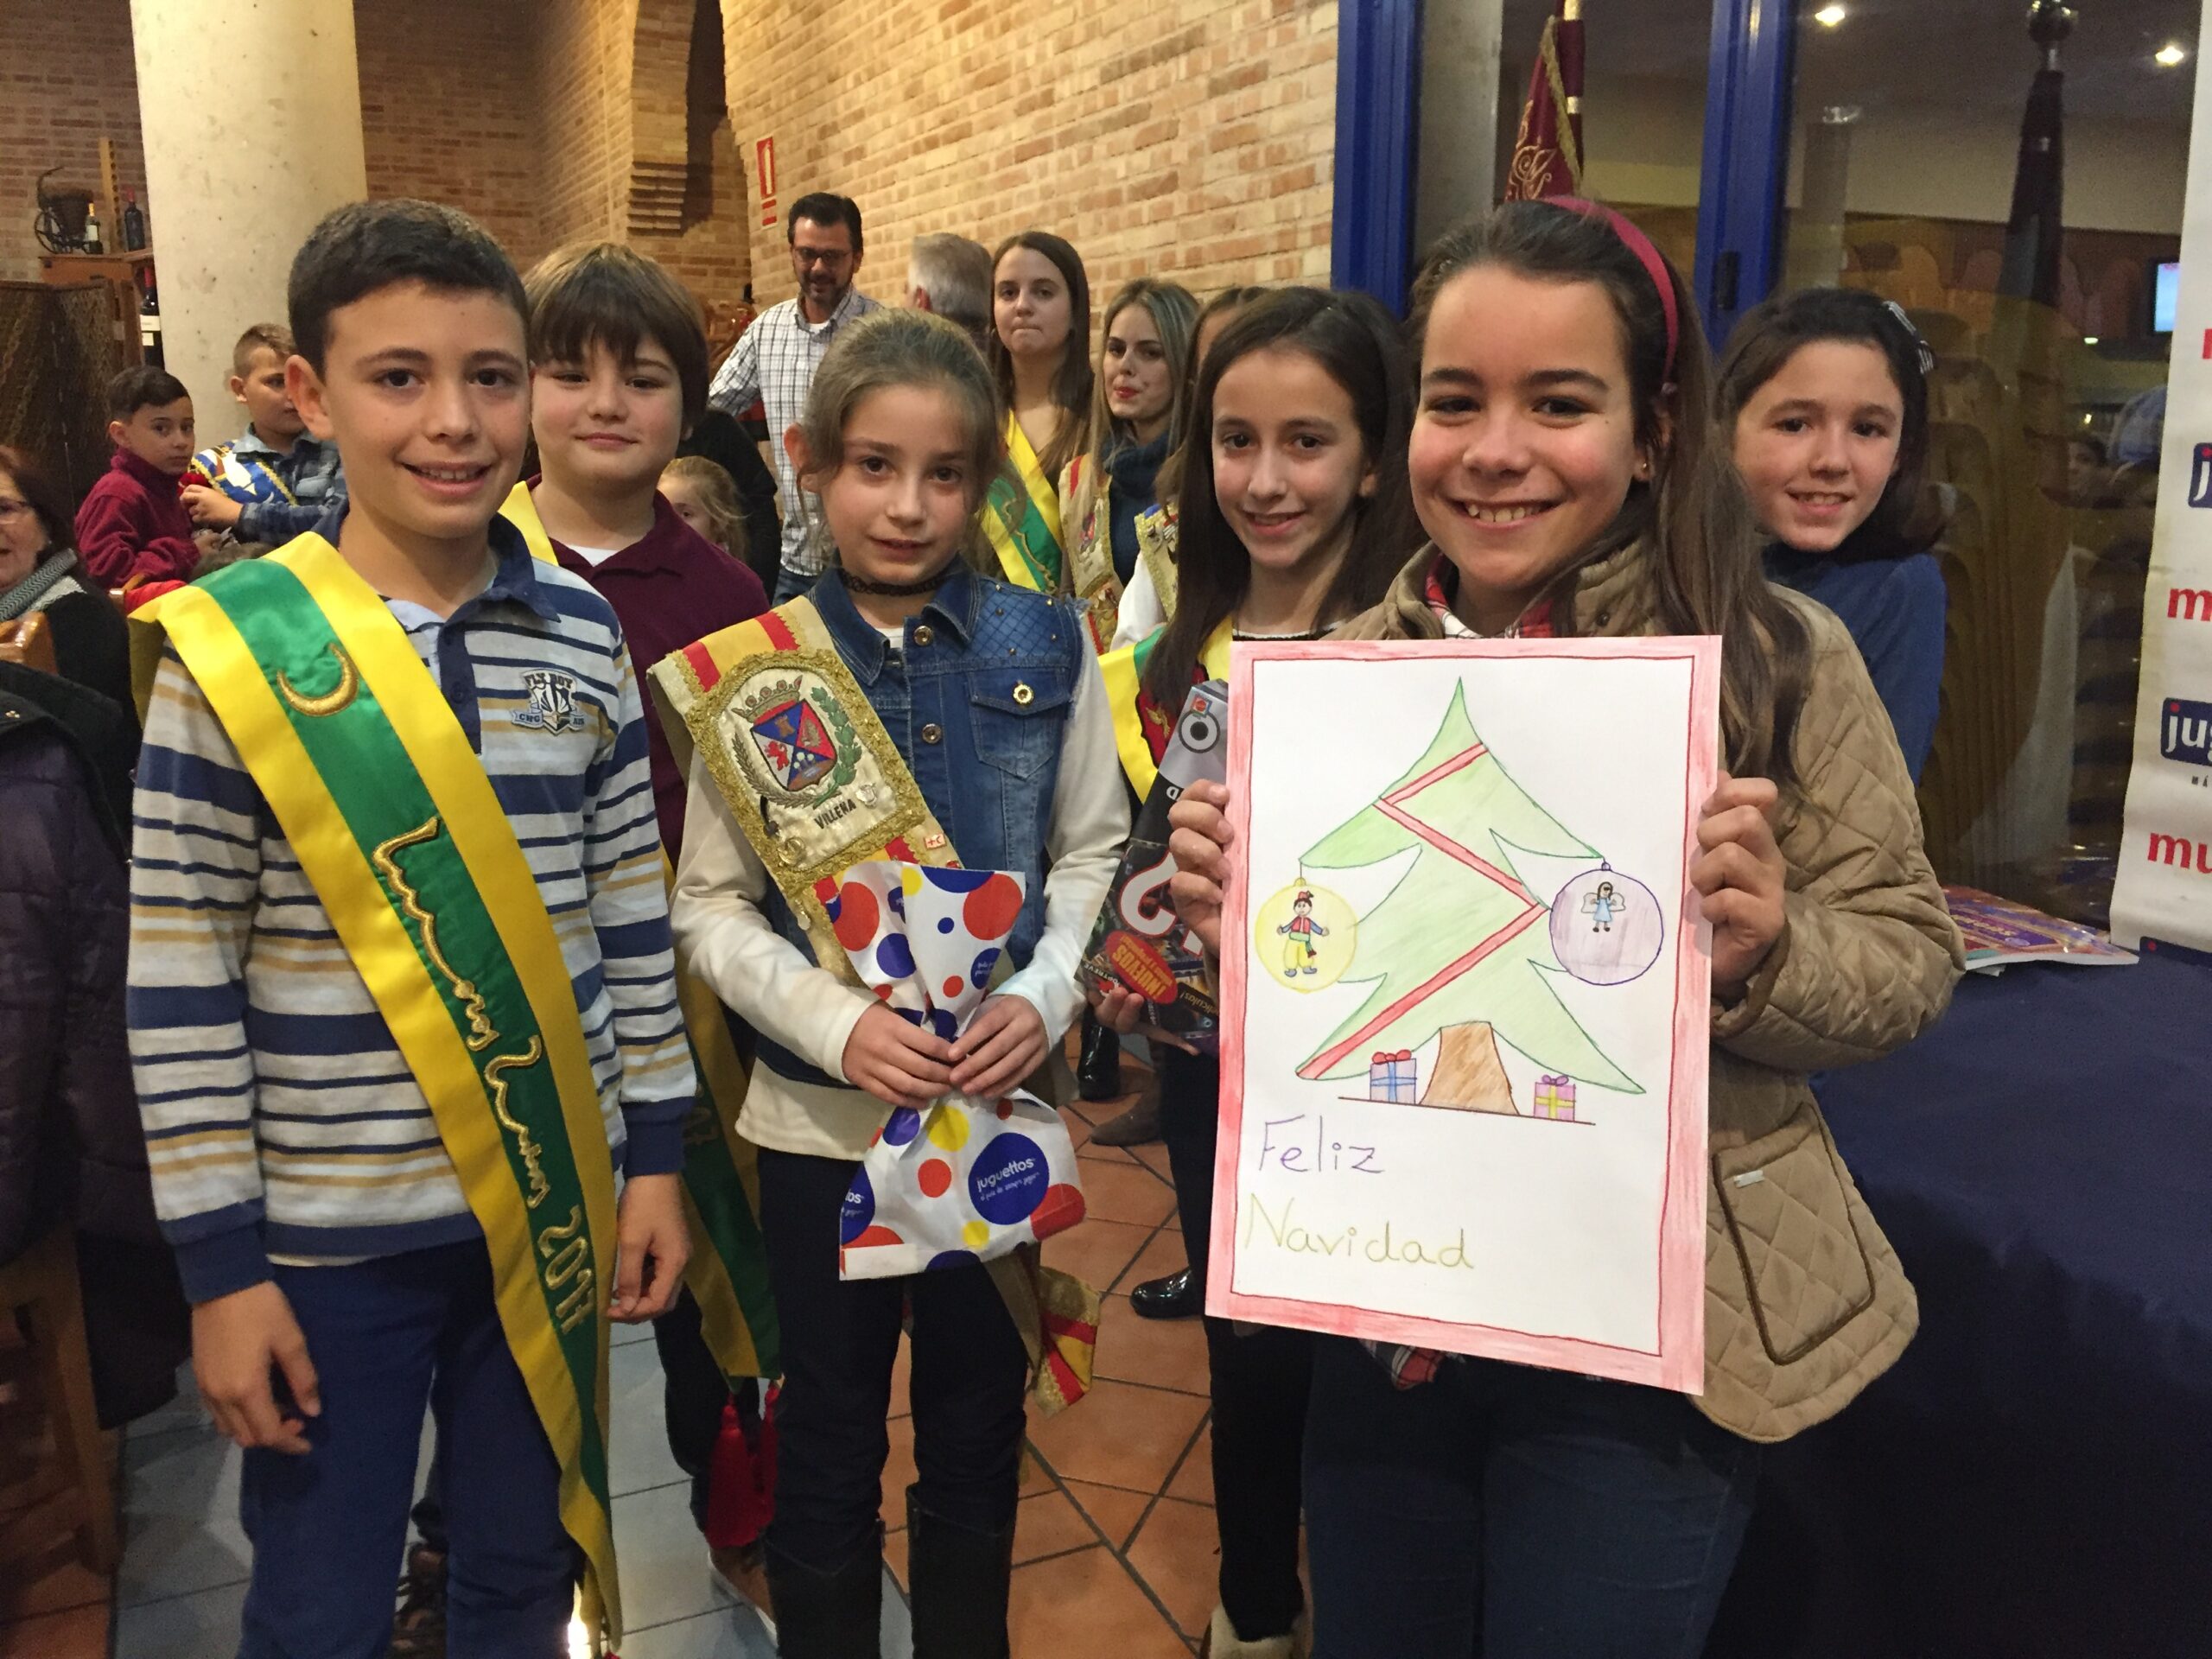 Premios del XIII Concurso de Dibujo Infantil “Villena y la Nalvidad”